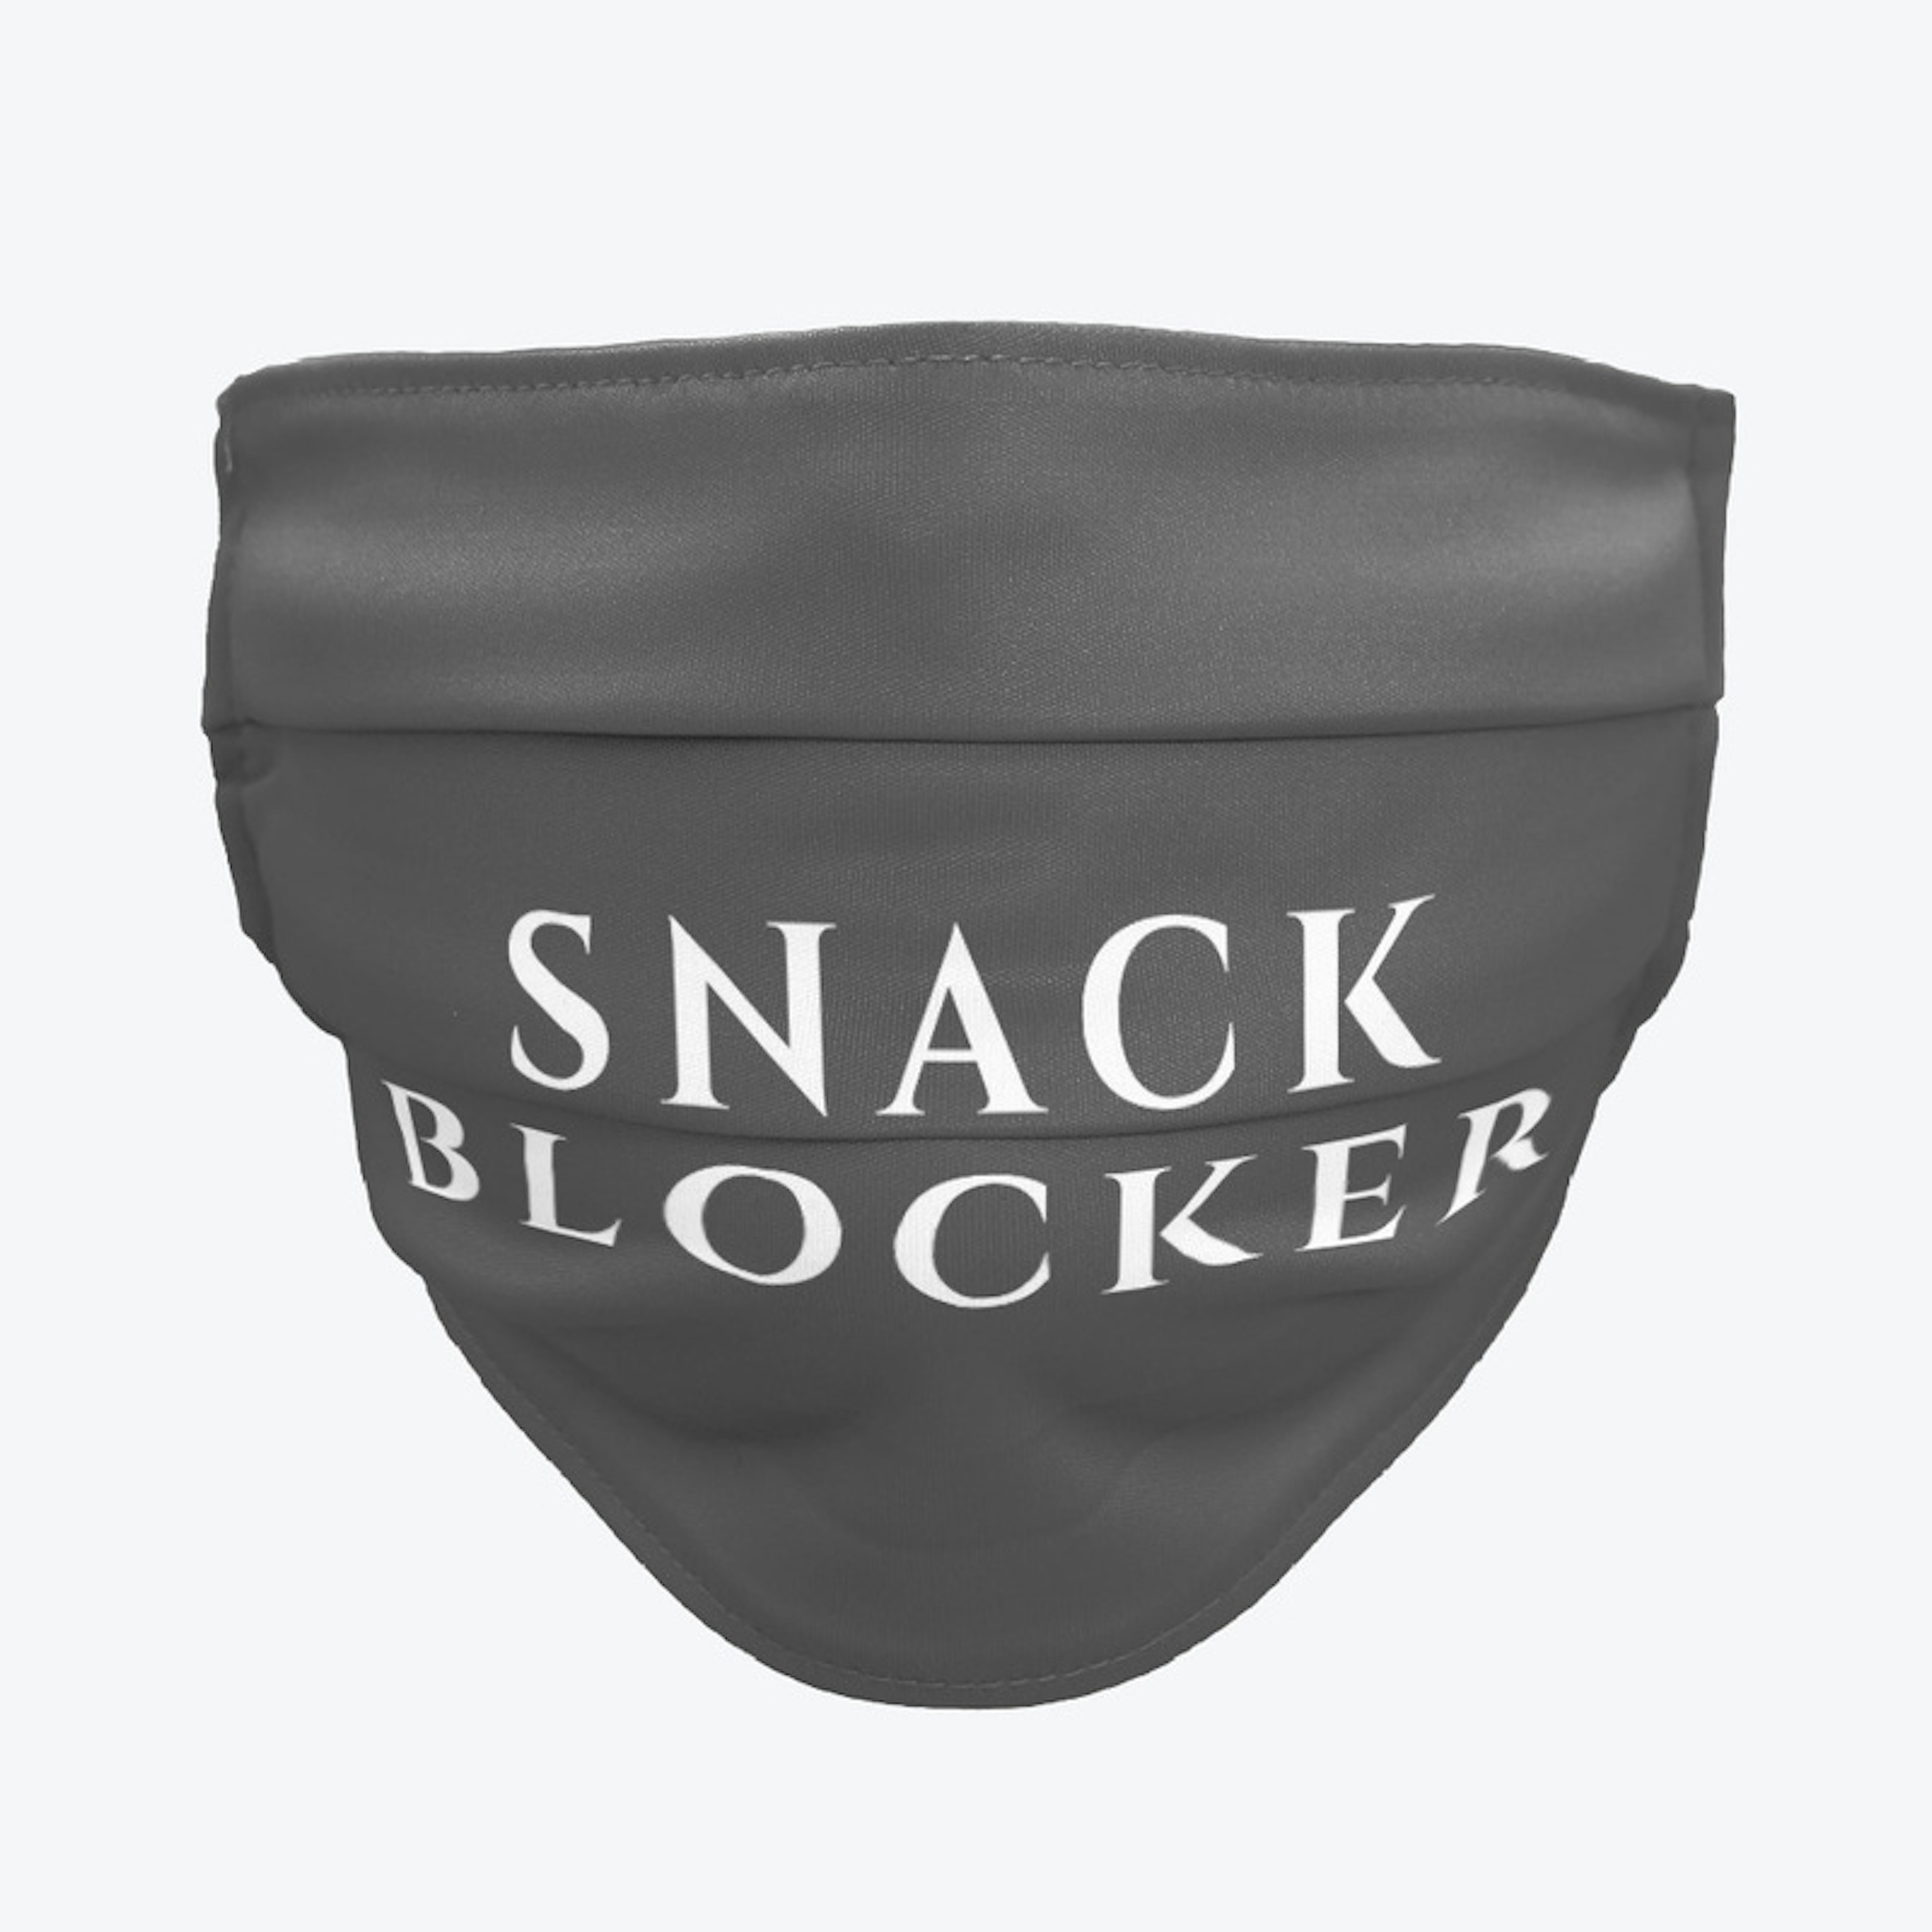 Snack Blocker